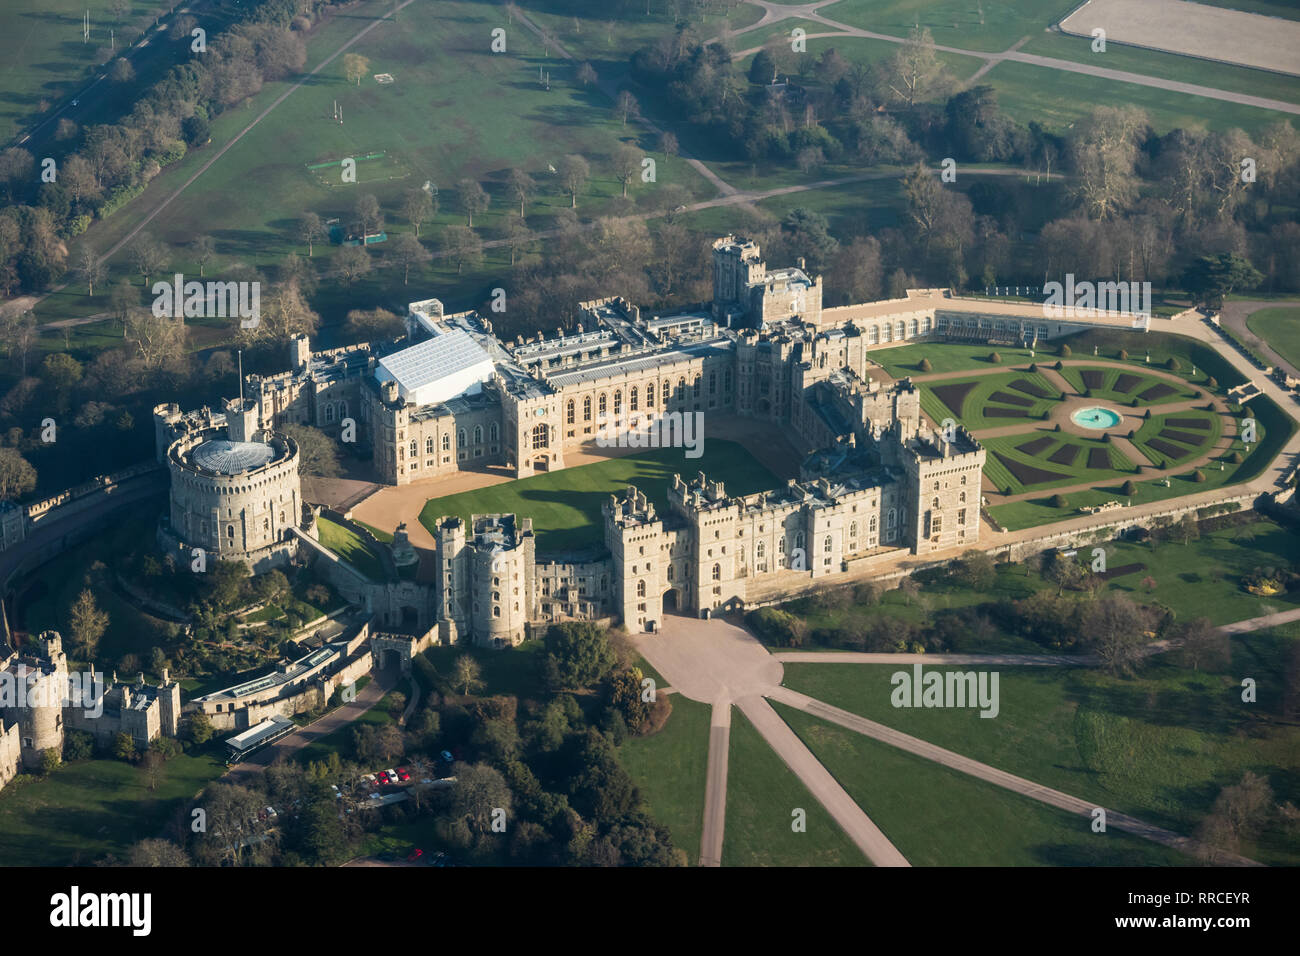 Vue aérienne du château de Windsor, London, UK Banque D'Images